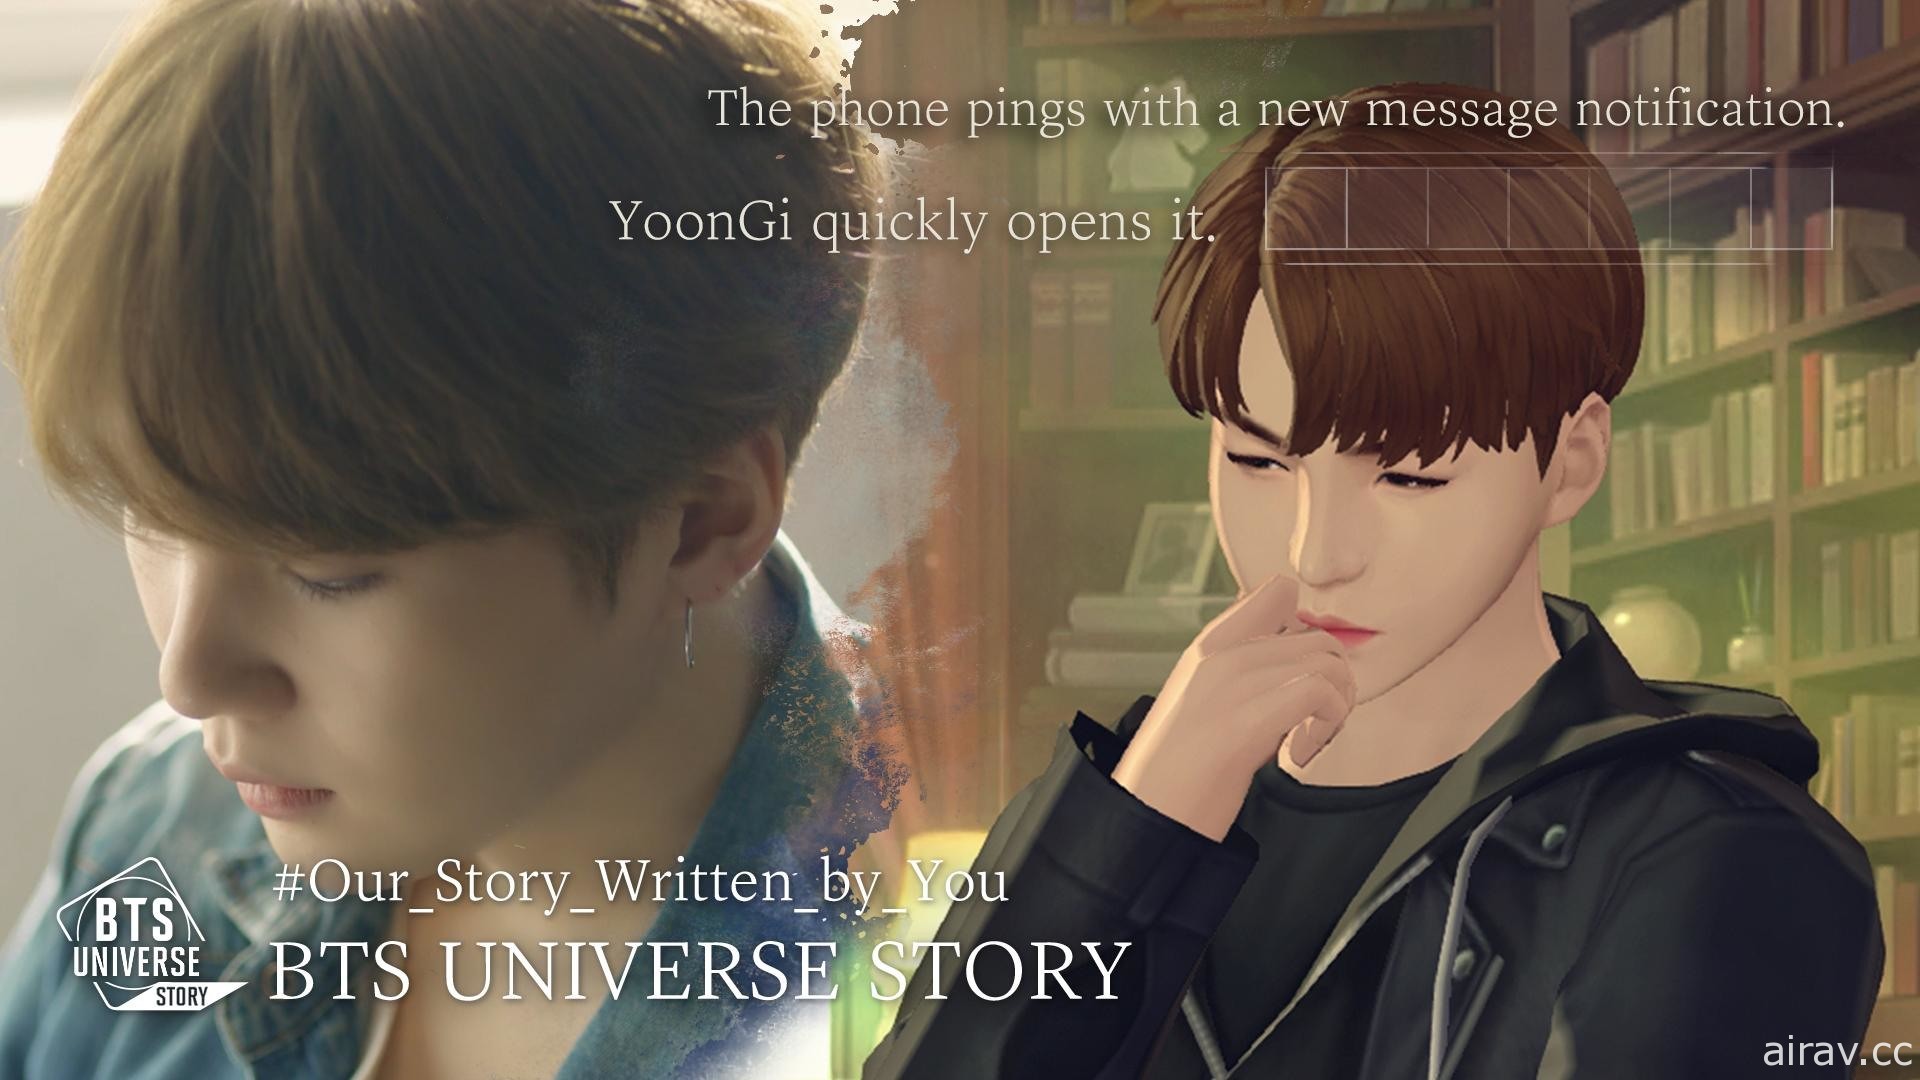 【试玩】ARMY 们注意！《BTS Universe Story》互动之余创作独一无二的 BTS 故事